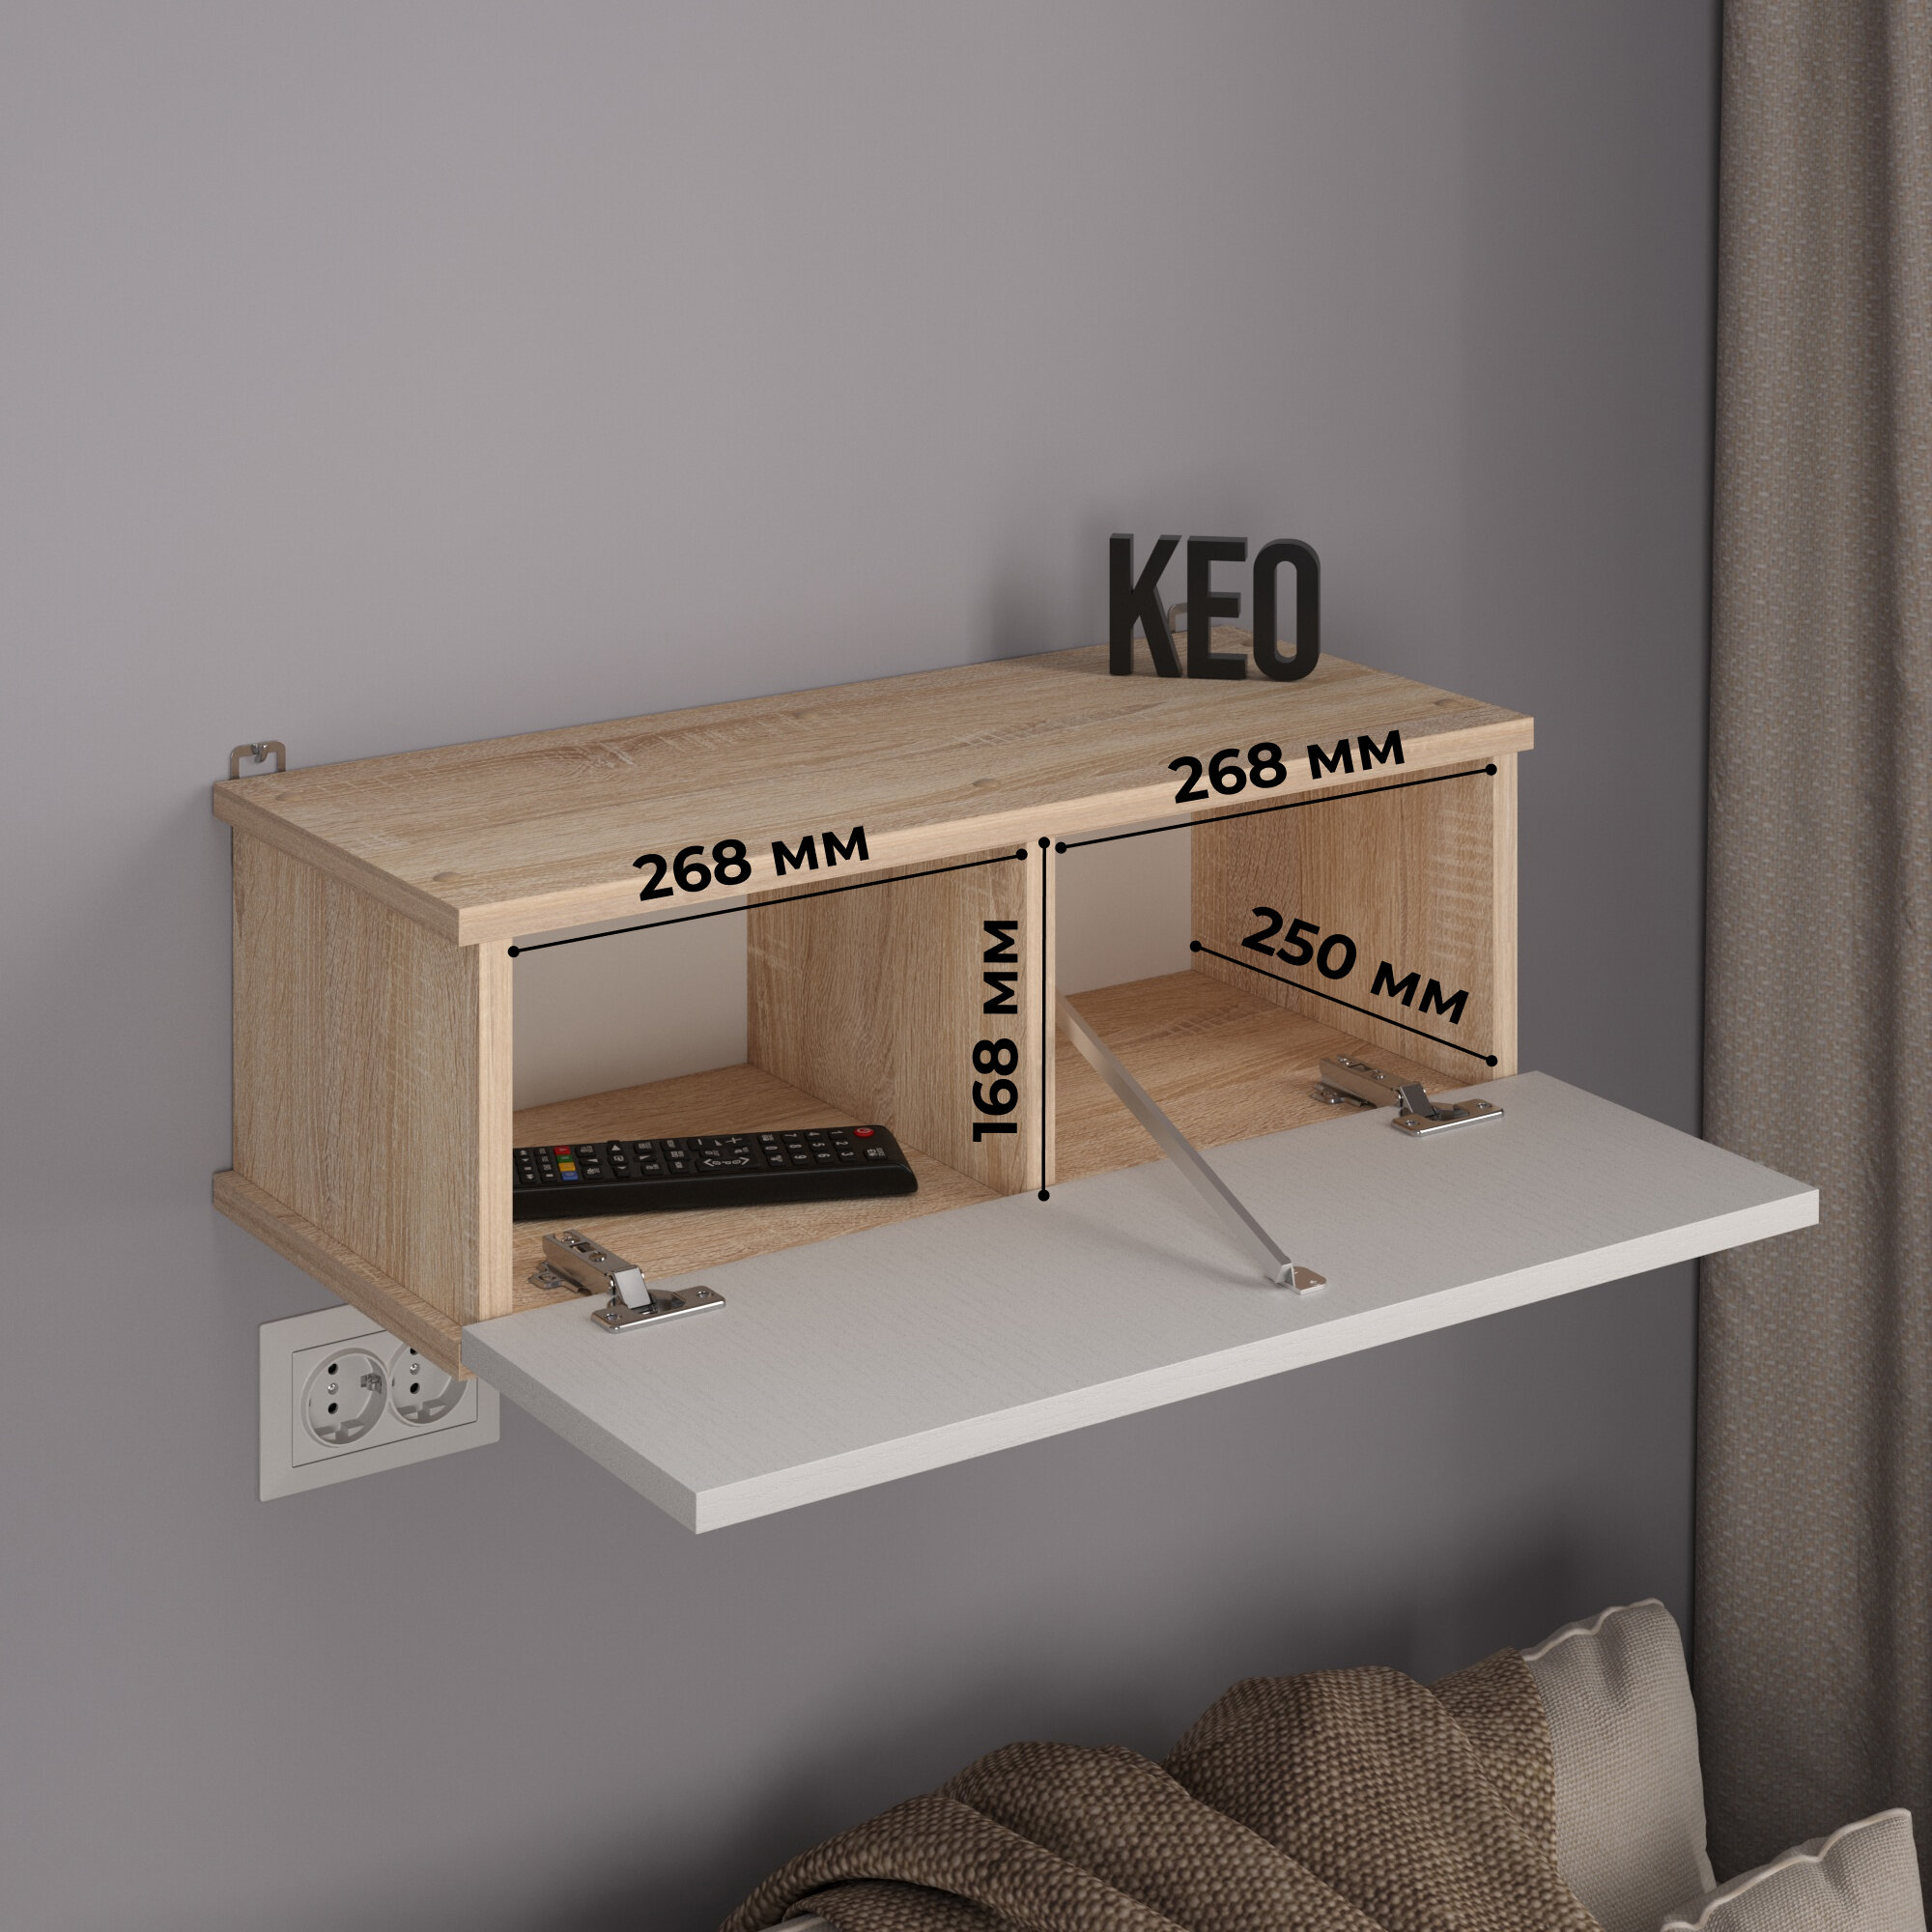 Полка подвесная настенная навесной шкаф пенал для прихожей спальни гостиной детской Кео ПЛК-200 белый и дуб сонома бежевый